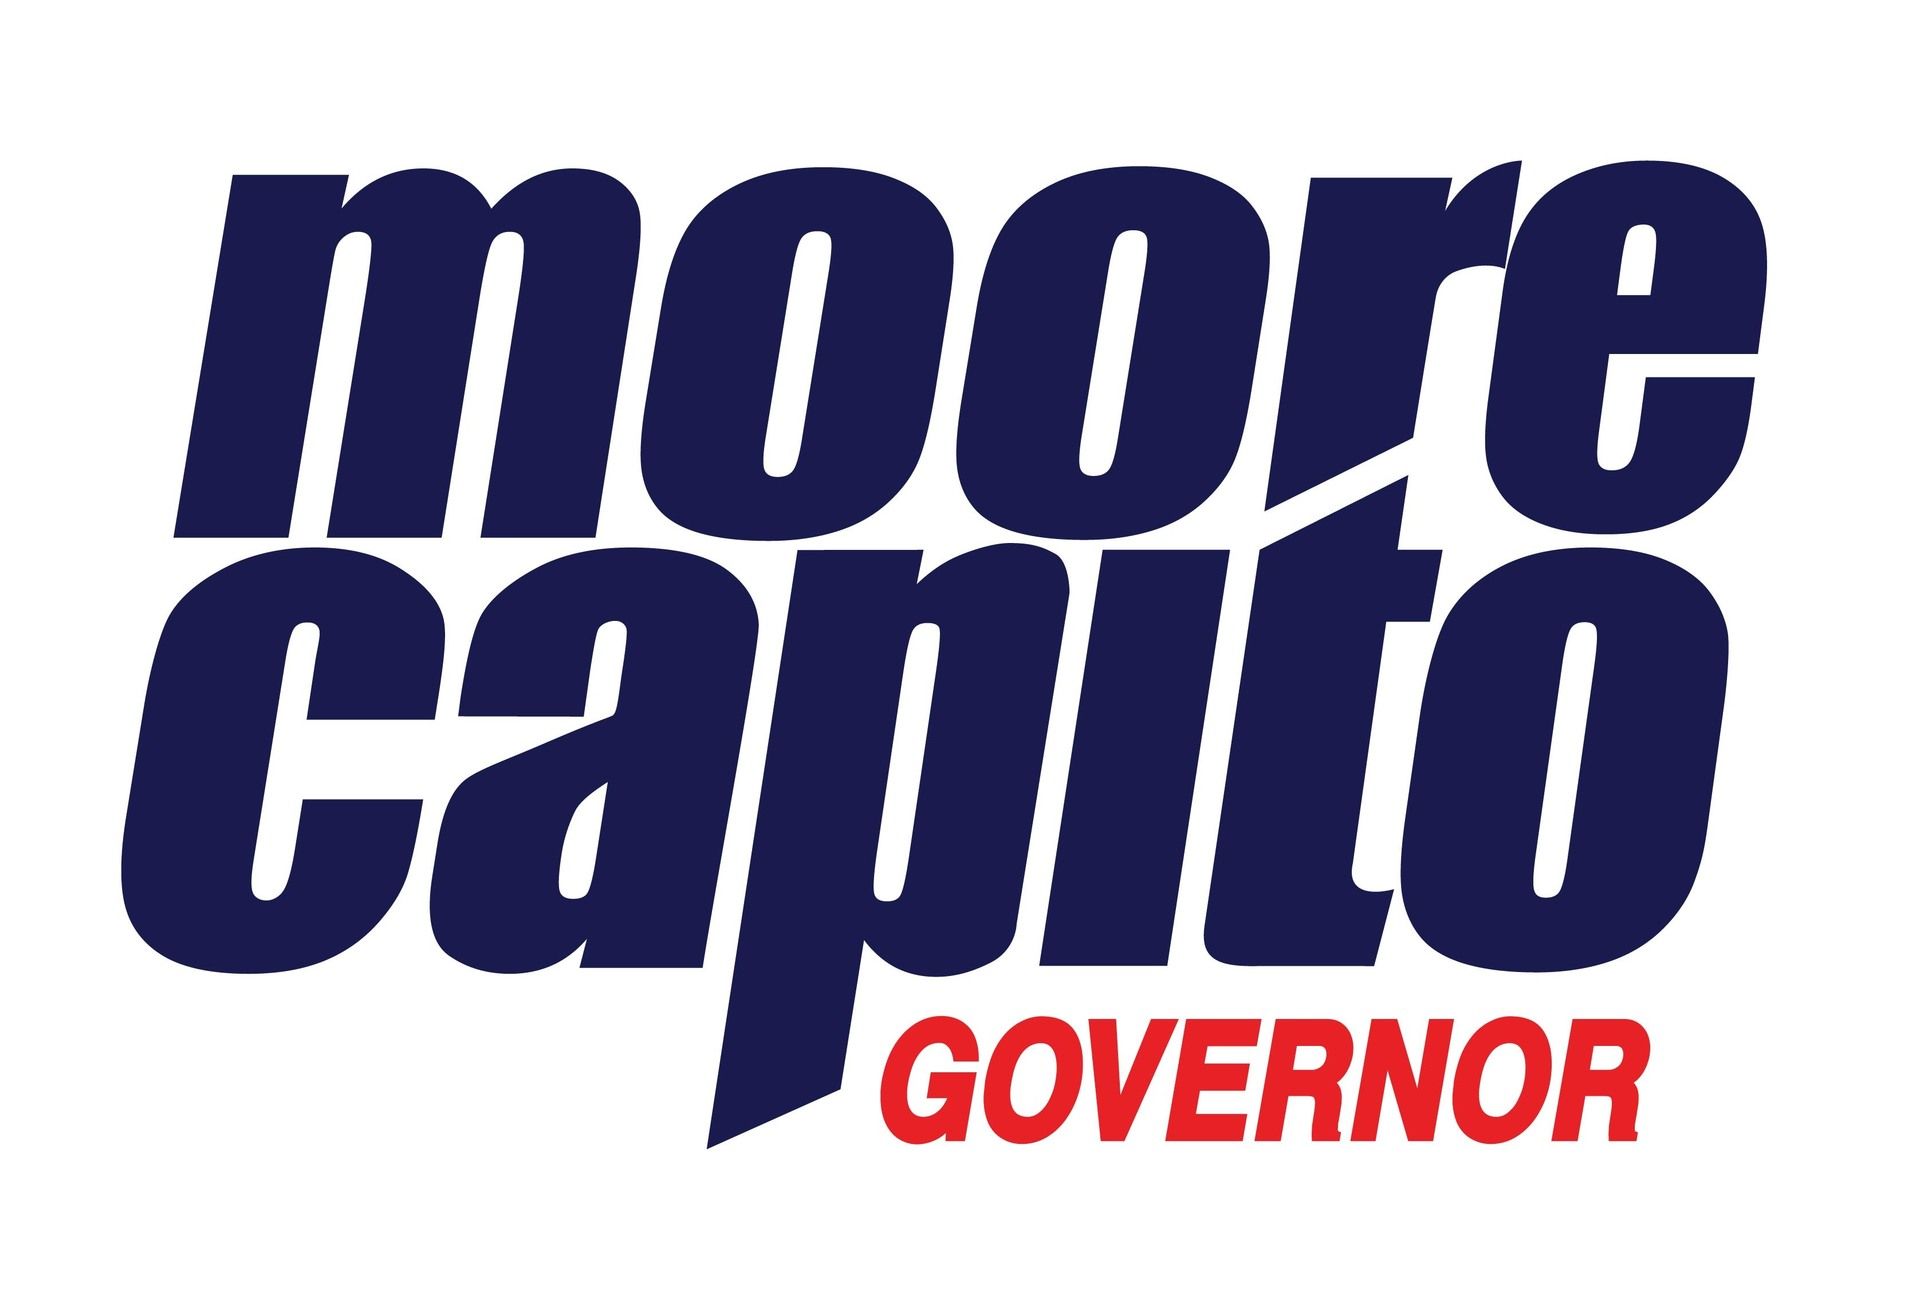 Moore capito governor positive